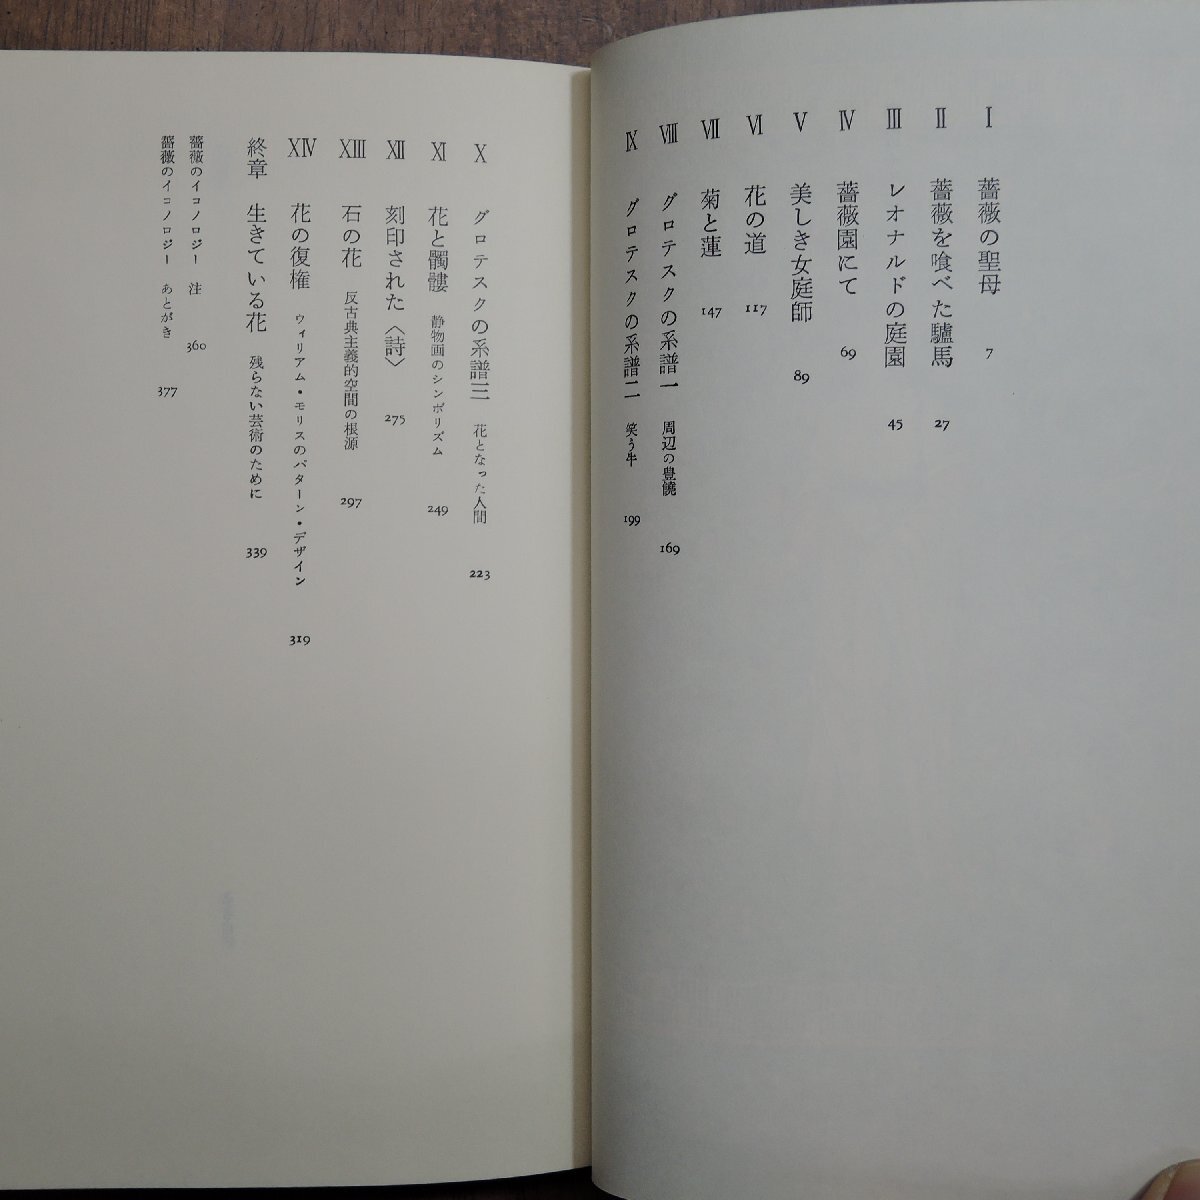 ◎薔薇のイコノロジー　若桑みどり　青土社　定価3400円　1985年